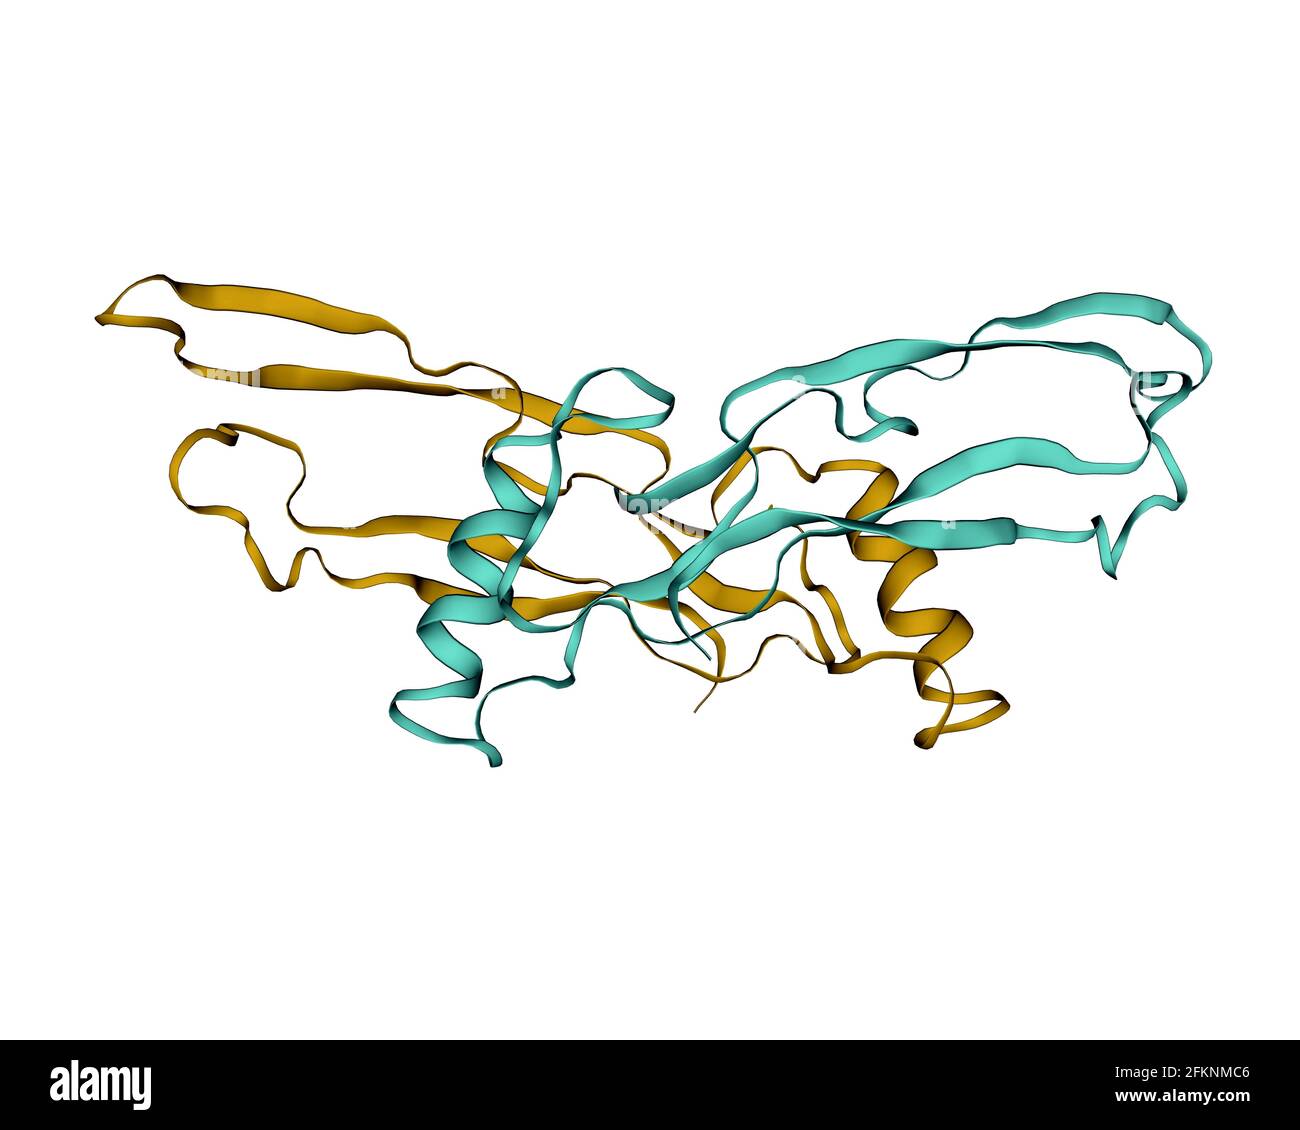 Struktur des menschlichen Anti-Mullerian Hormons (AMH) Homodimer, 3D-Cartoon-Modell. Weißer Hintergrund Stockfoto